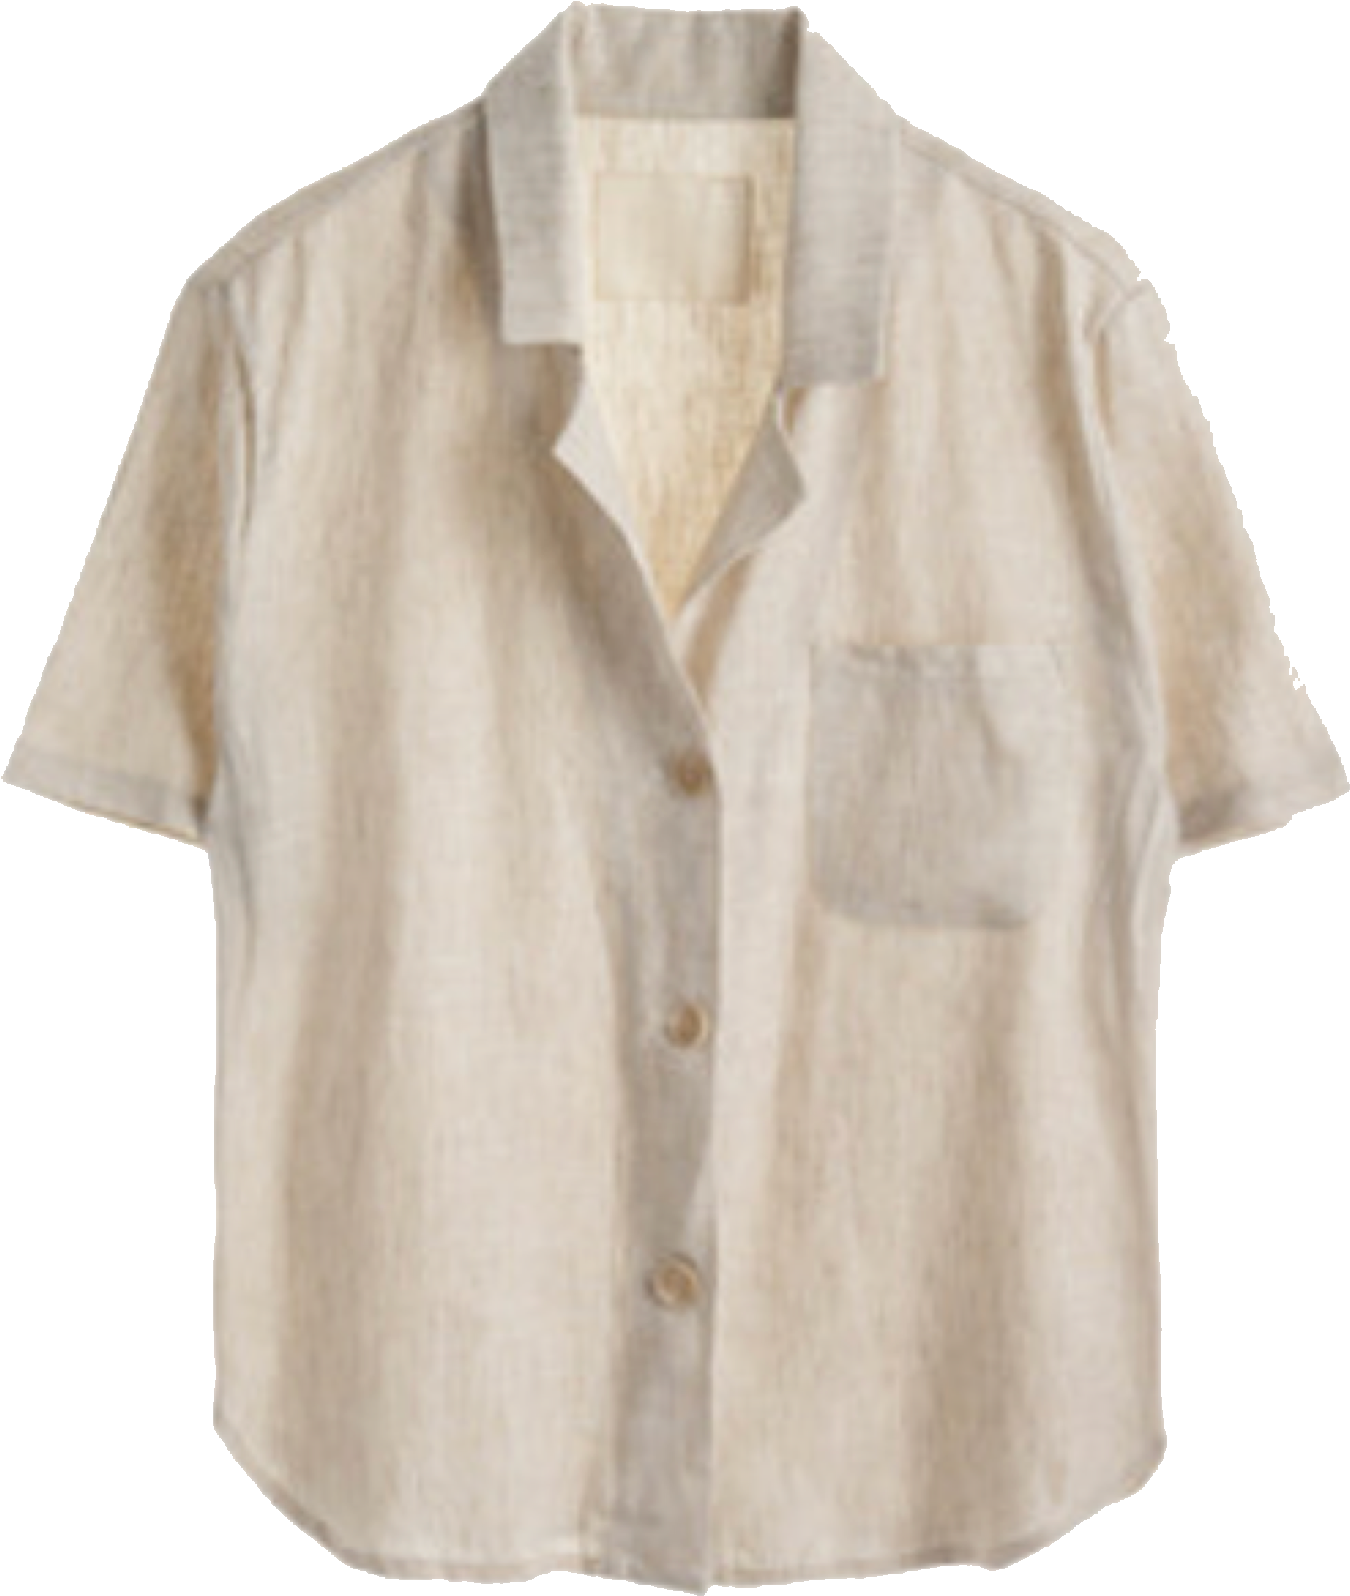 Beige Short Sleeve Shirt